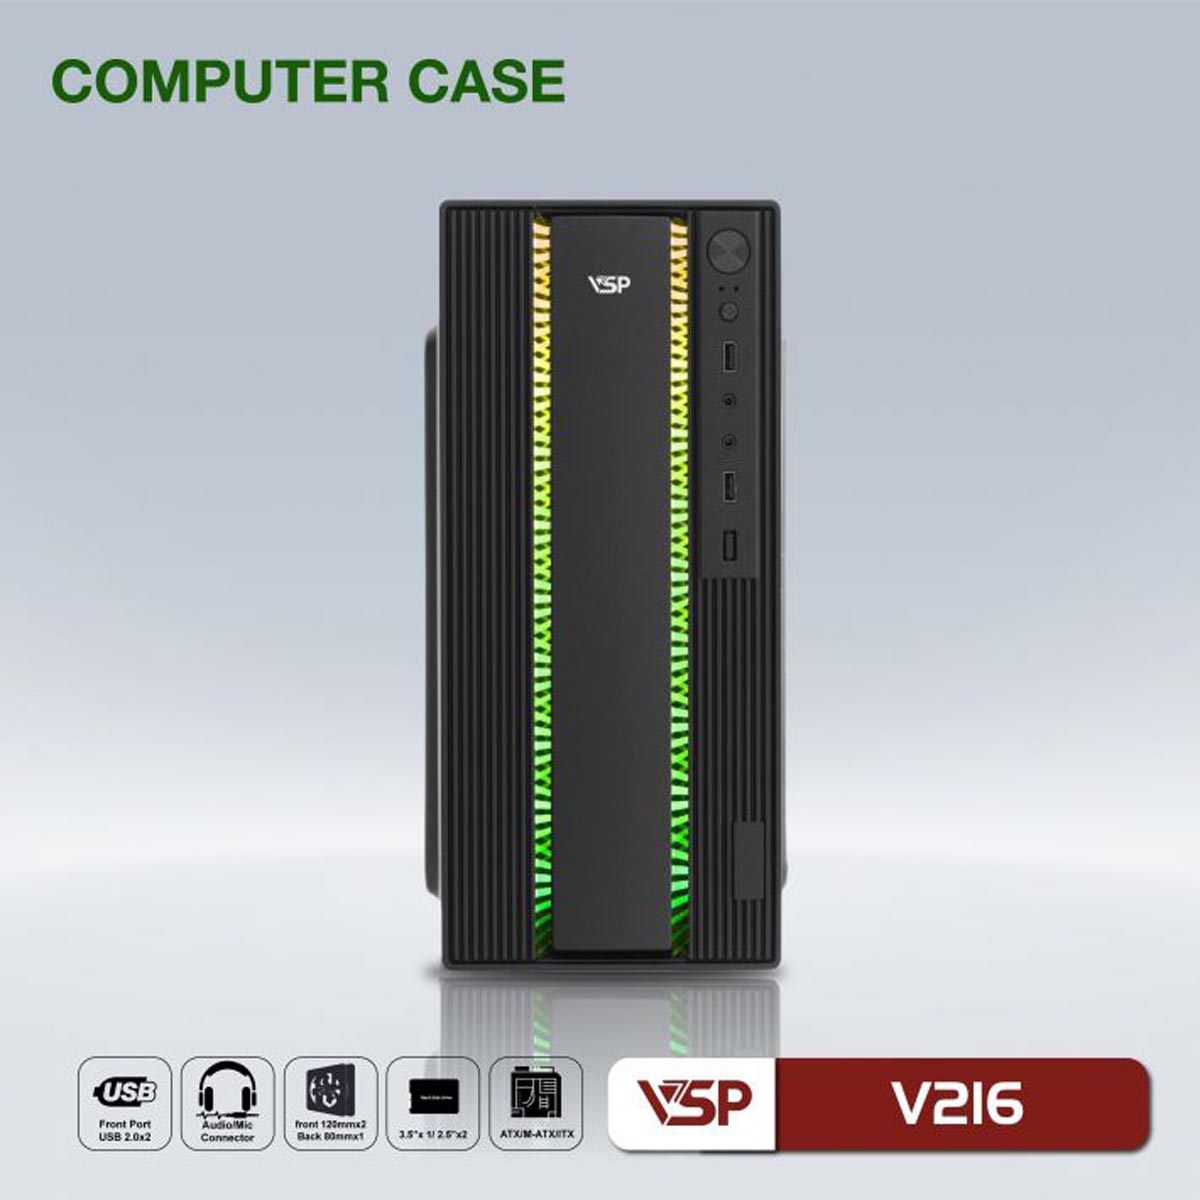 Vỏ Case VSP V216 (ATX, Đen, Chưa Gồm Fan)